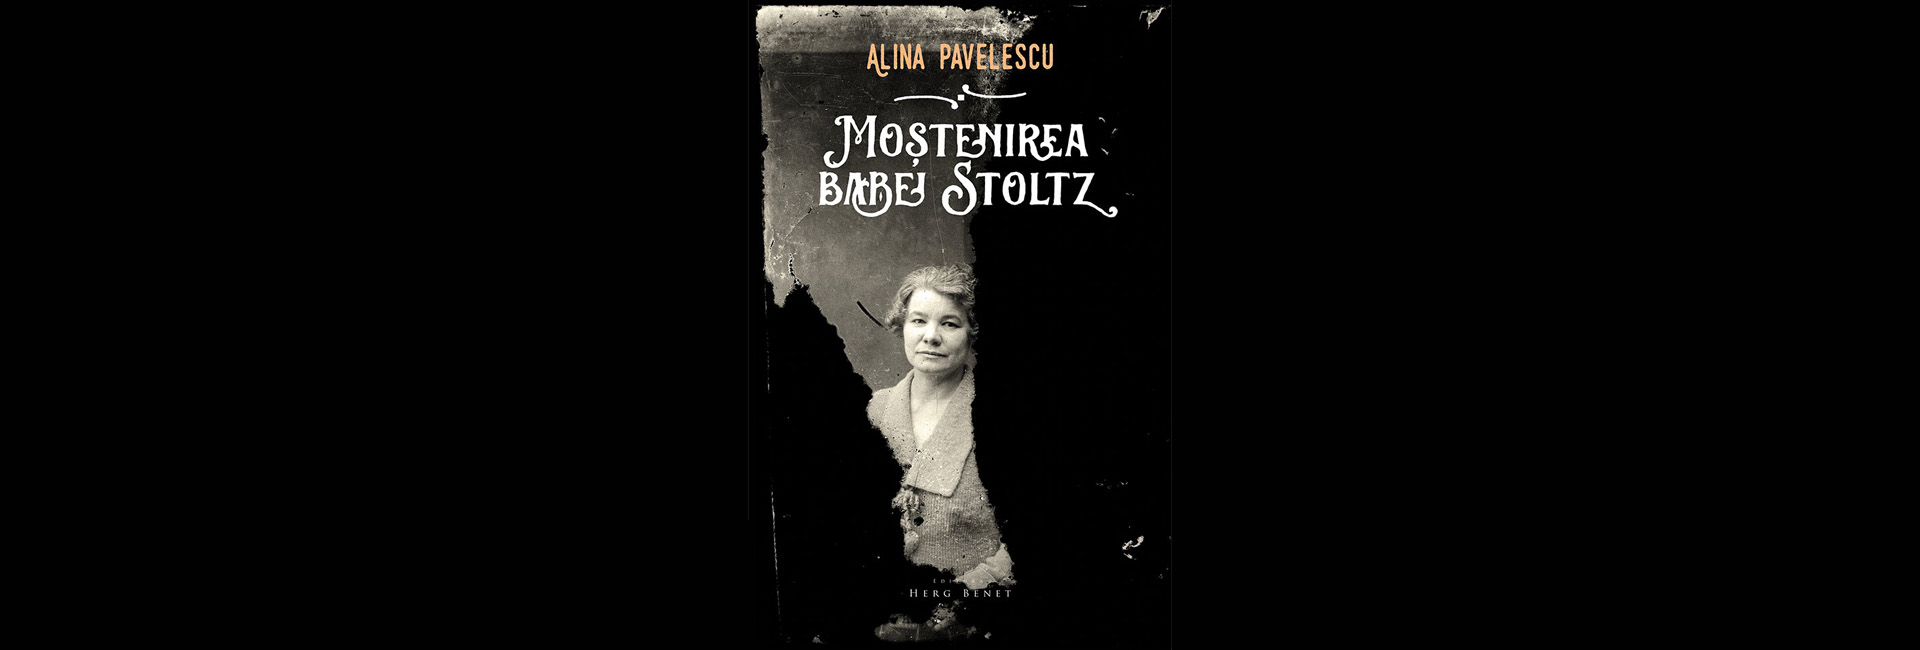 recenzie de carte literatură România Câmpia Bărăganului Moștenirea Babei Stoltz Alina Pavelescu slider